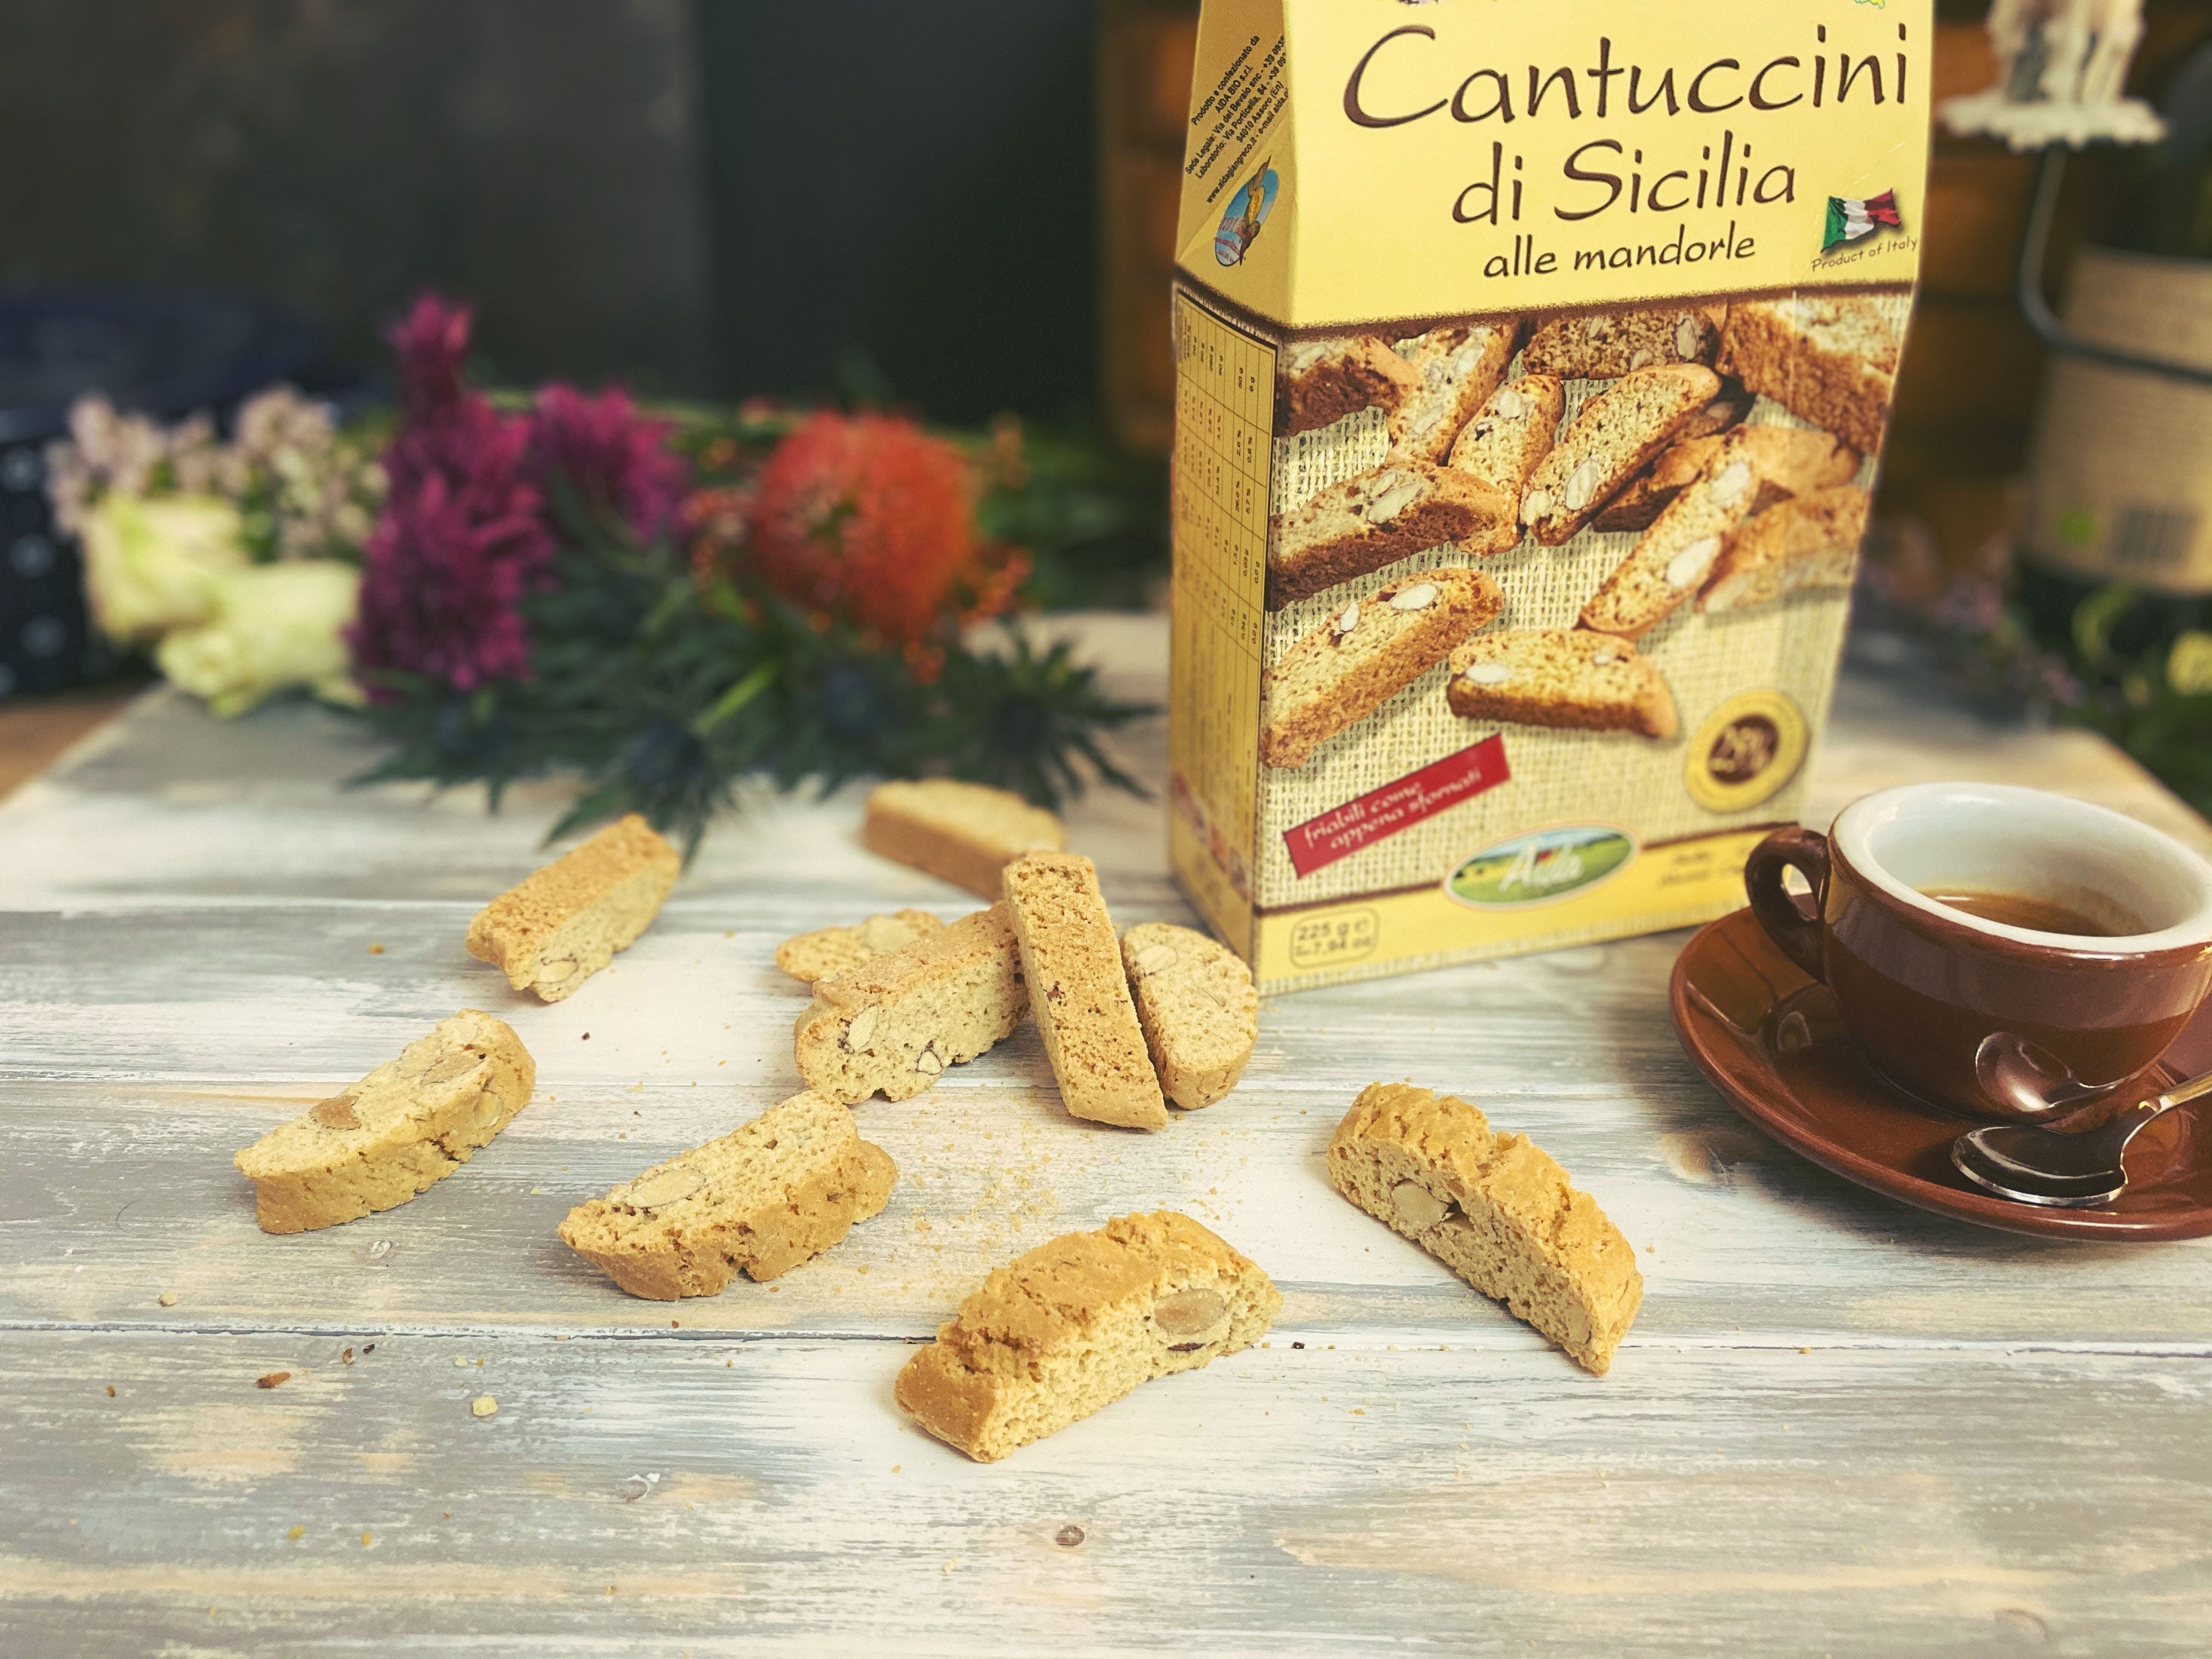 Cantuccini mit Mandeln | Italfood24